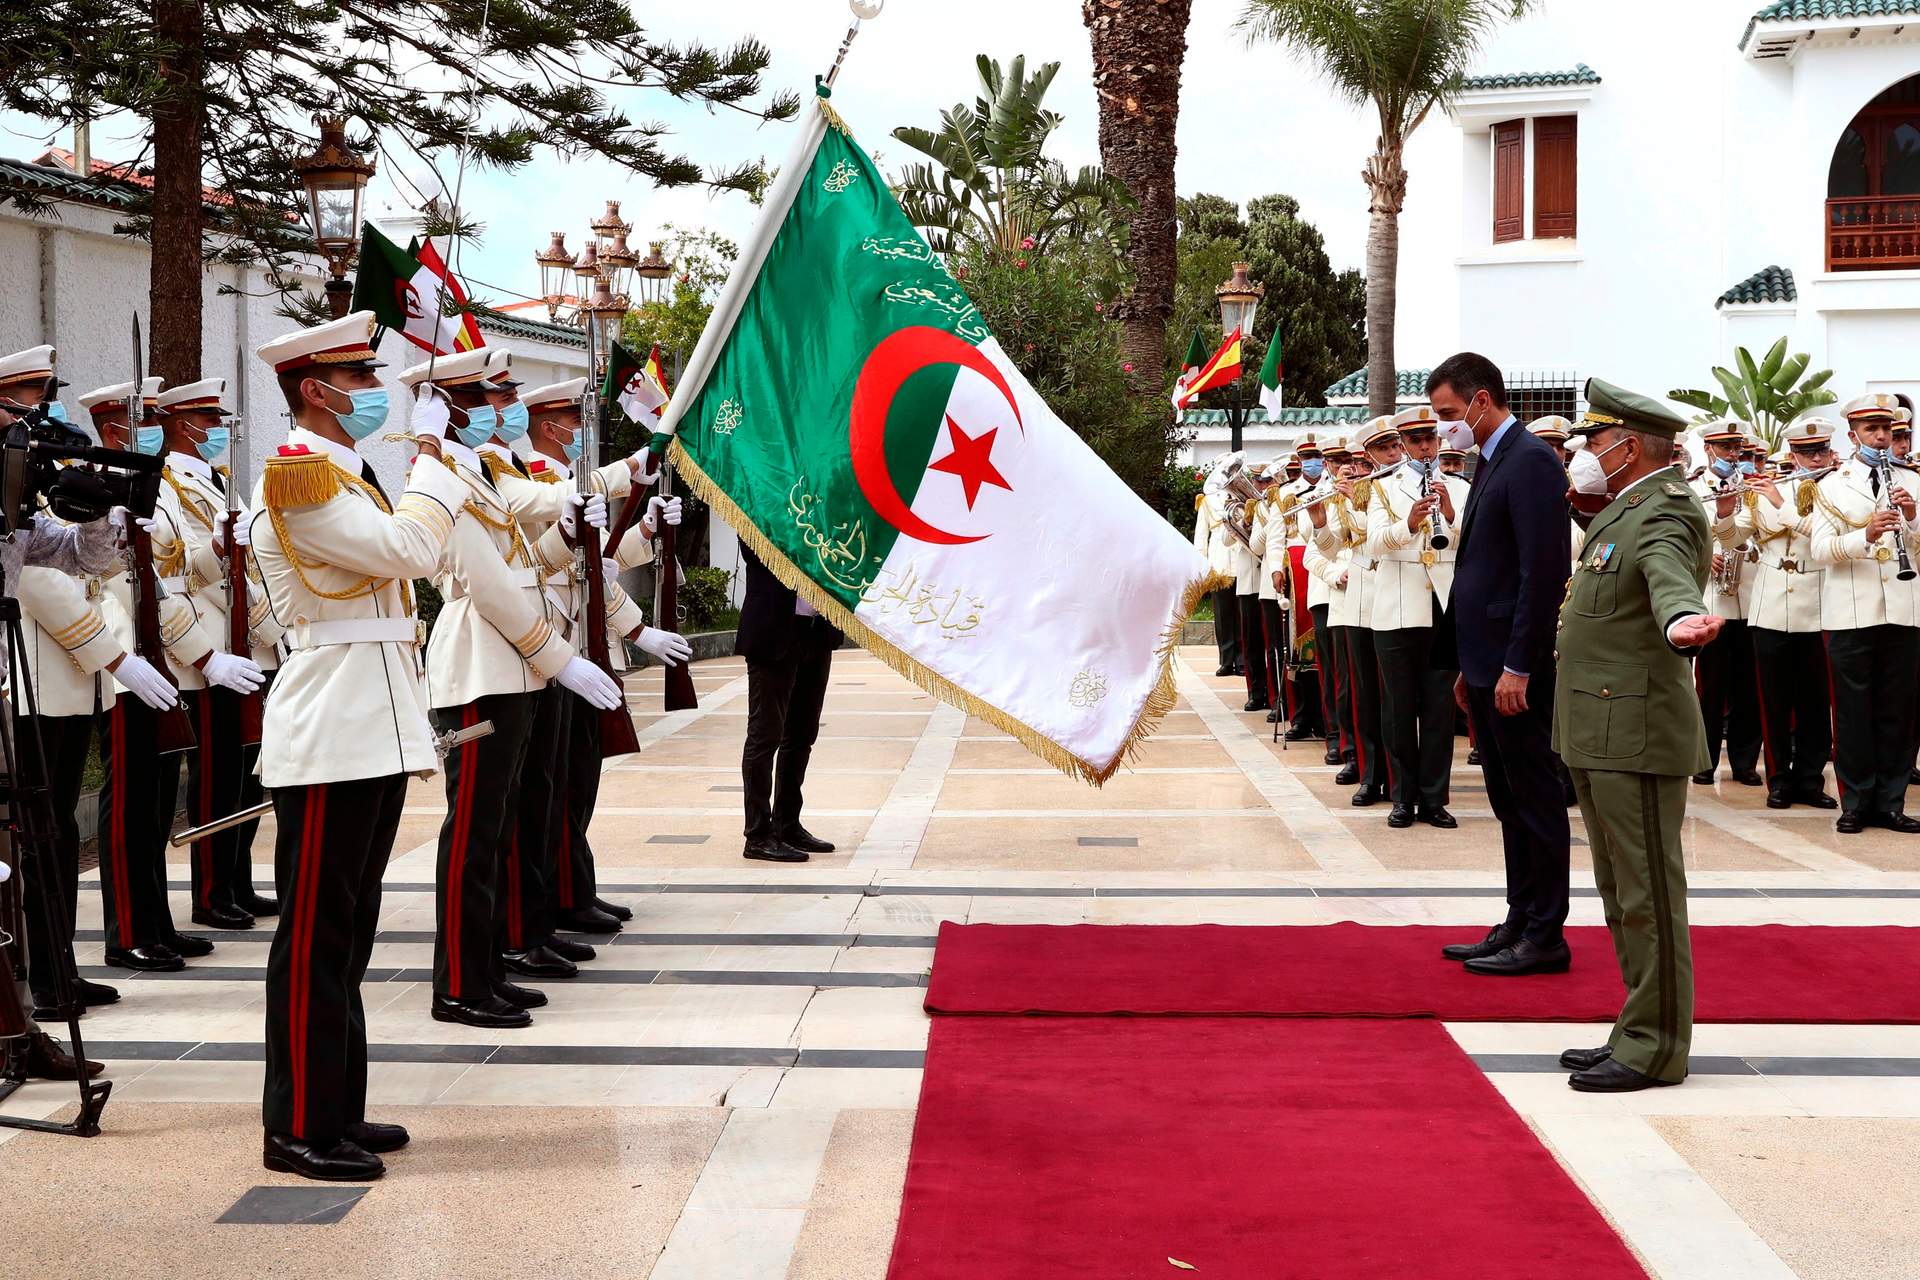 Las exportaciones a Argelia registran una recuperación parcial mientras a nivel político la relación sigue estancada